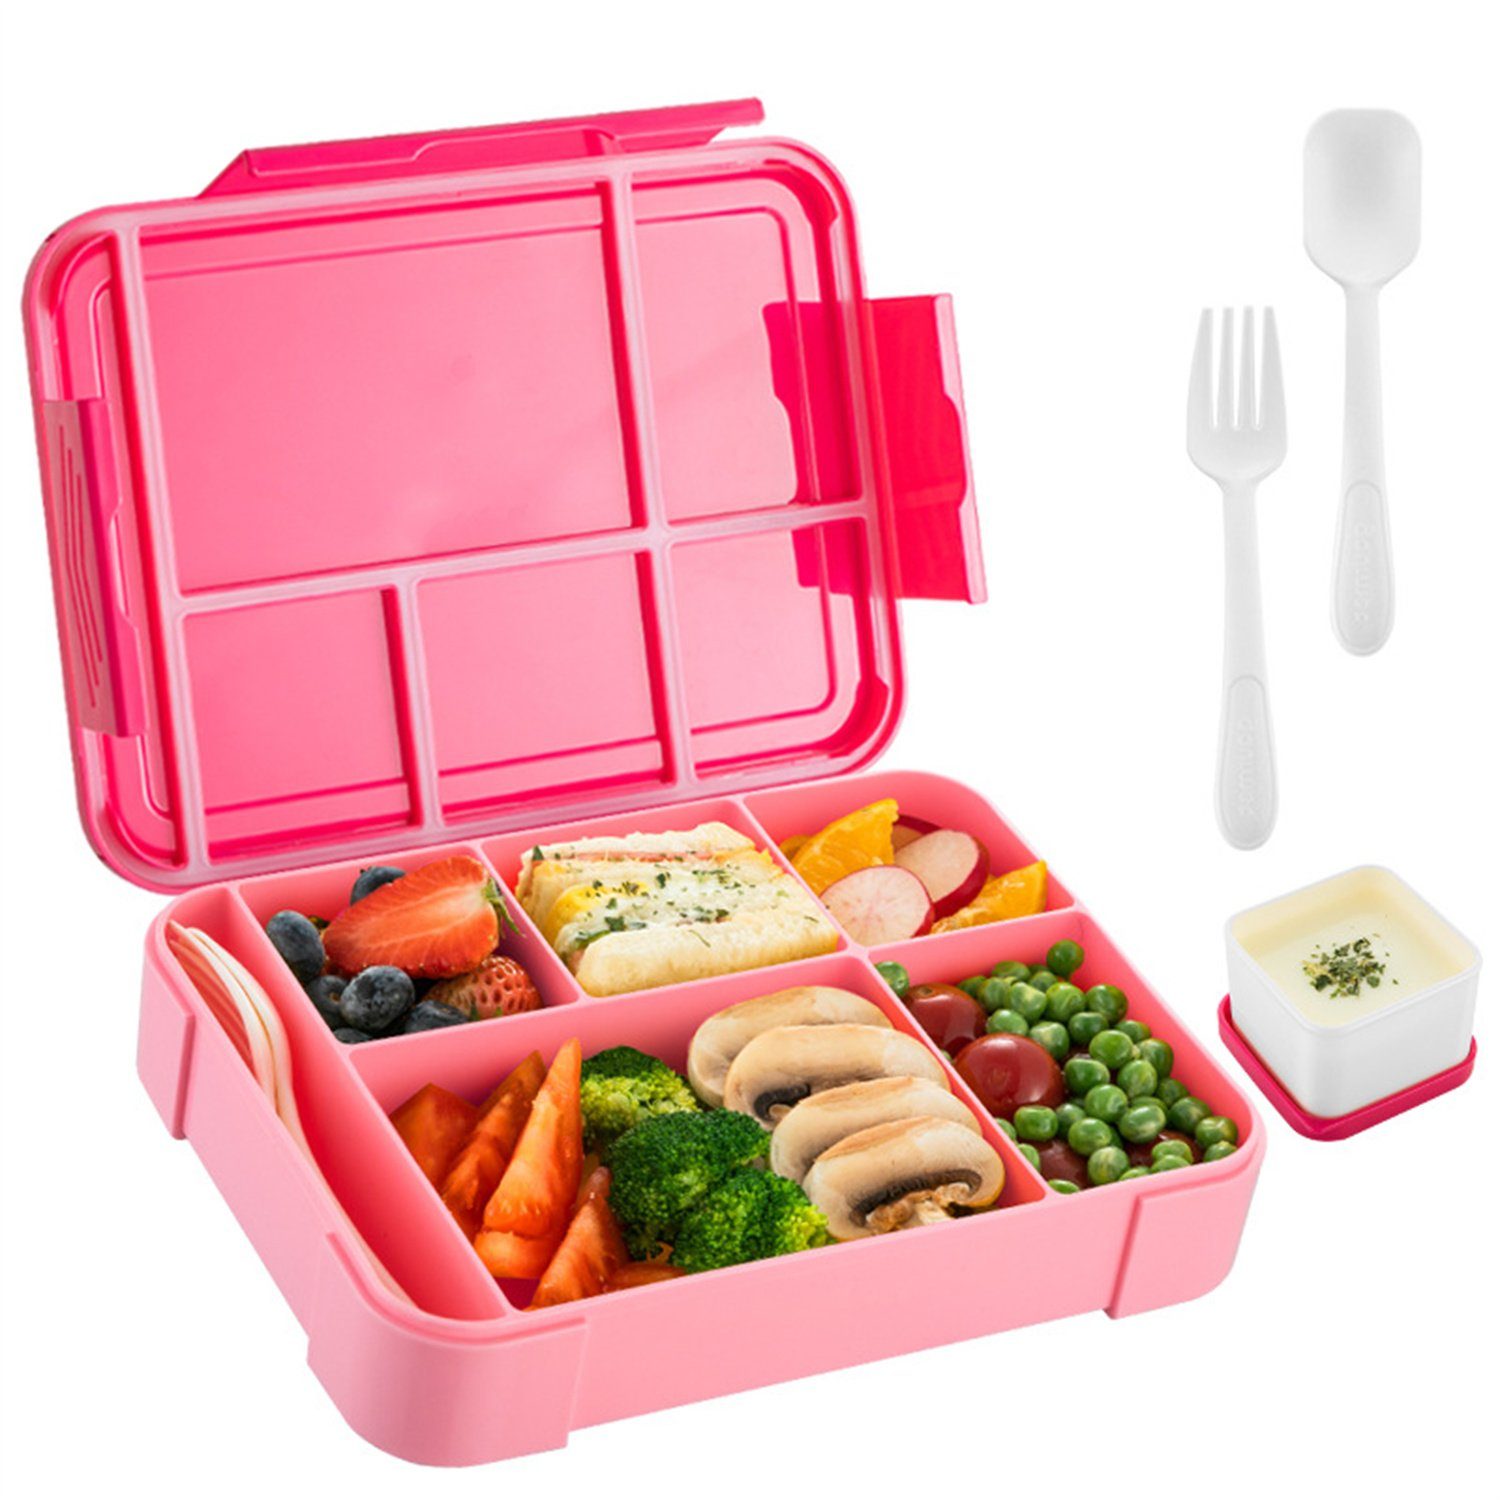 autolock Lunchbox 1330ml Lunchbox Kinder Auslaufsicher Bento Box,Blau und Rosa